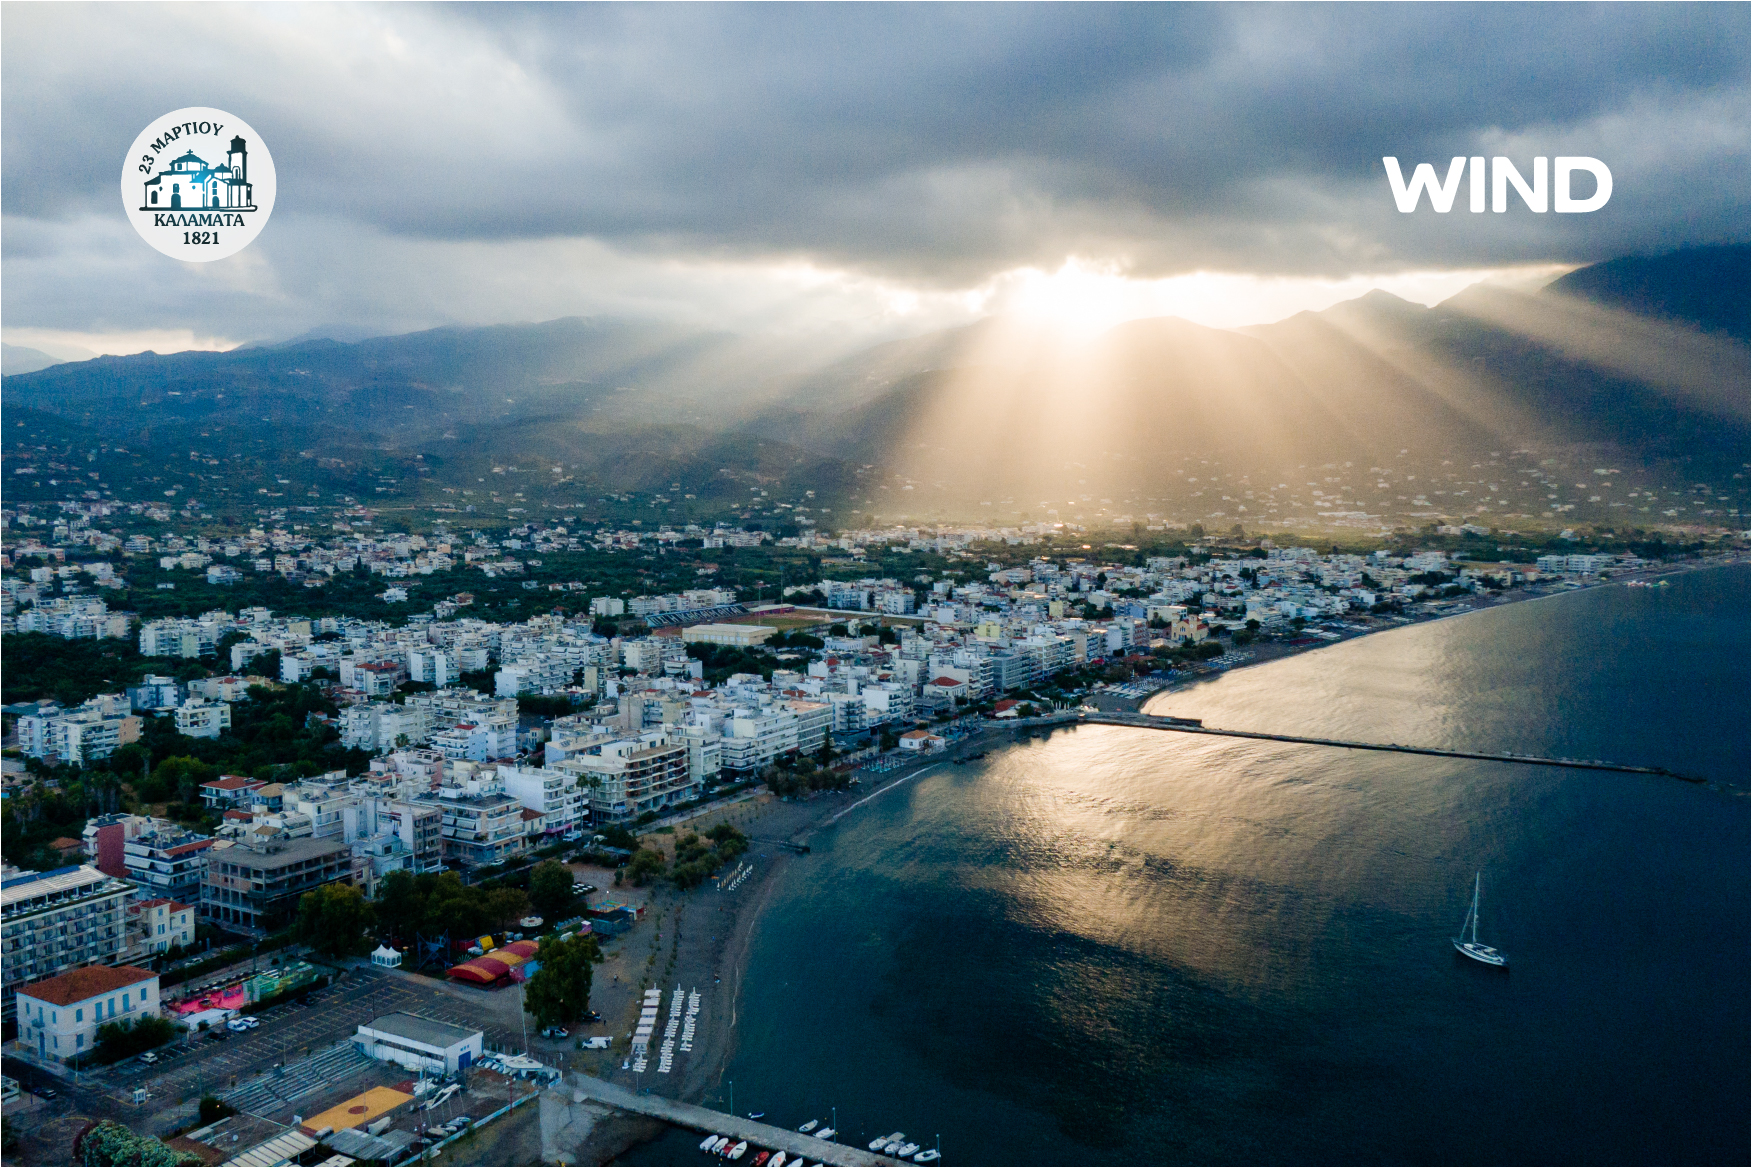 Η WIND Ελλάς συμβάλει στην ψηφιακή ανάπτυξη της Καλαμάτας ως πρότυπη πόλη για ψηφιακούς νομάδες